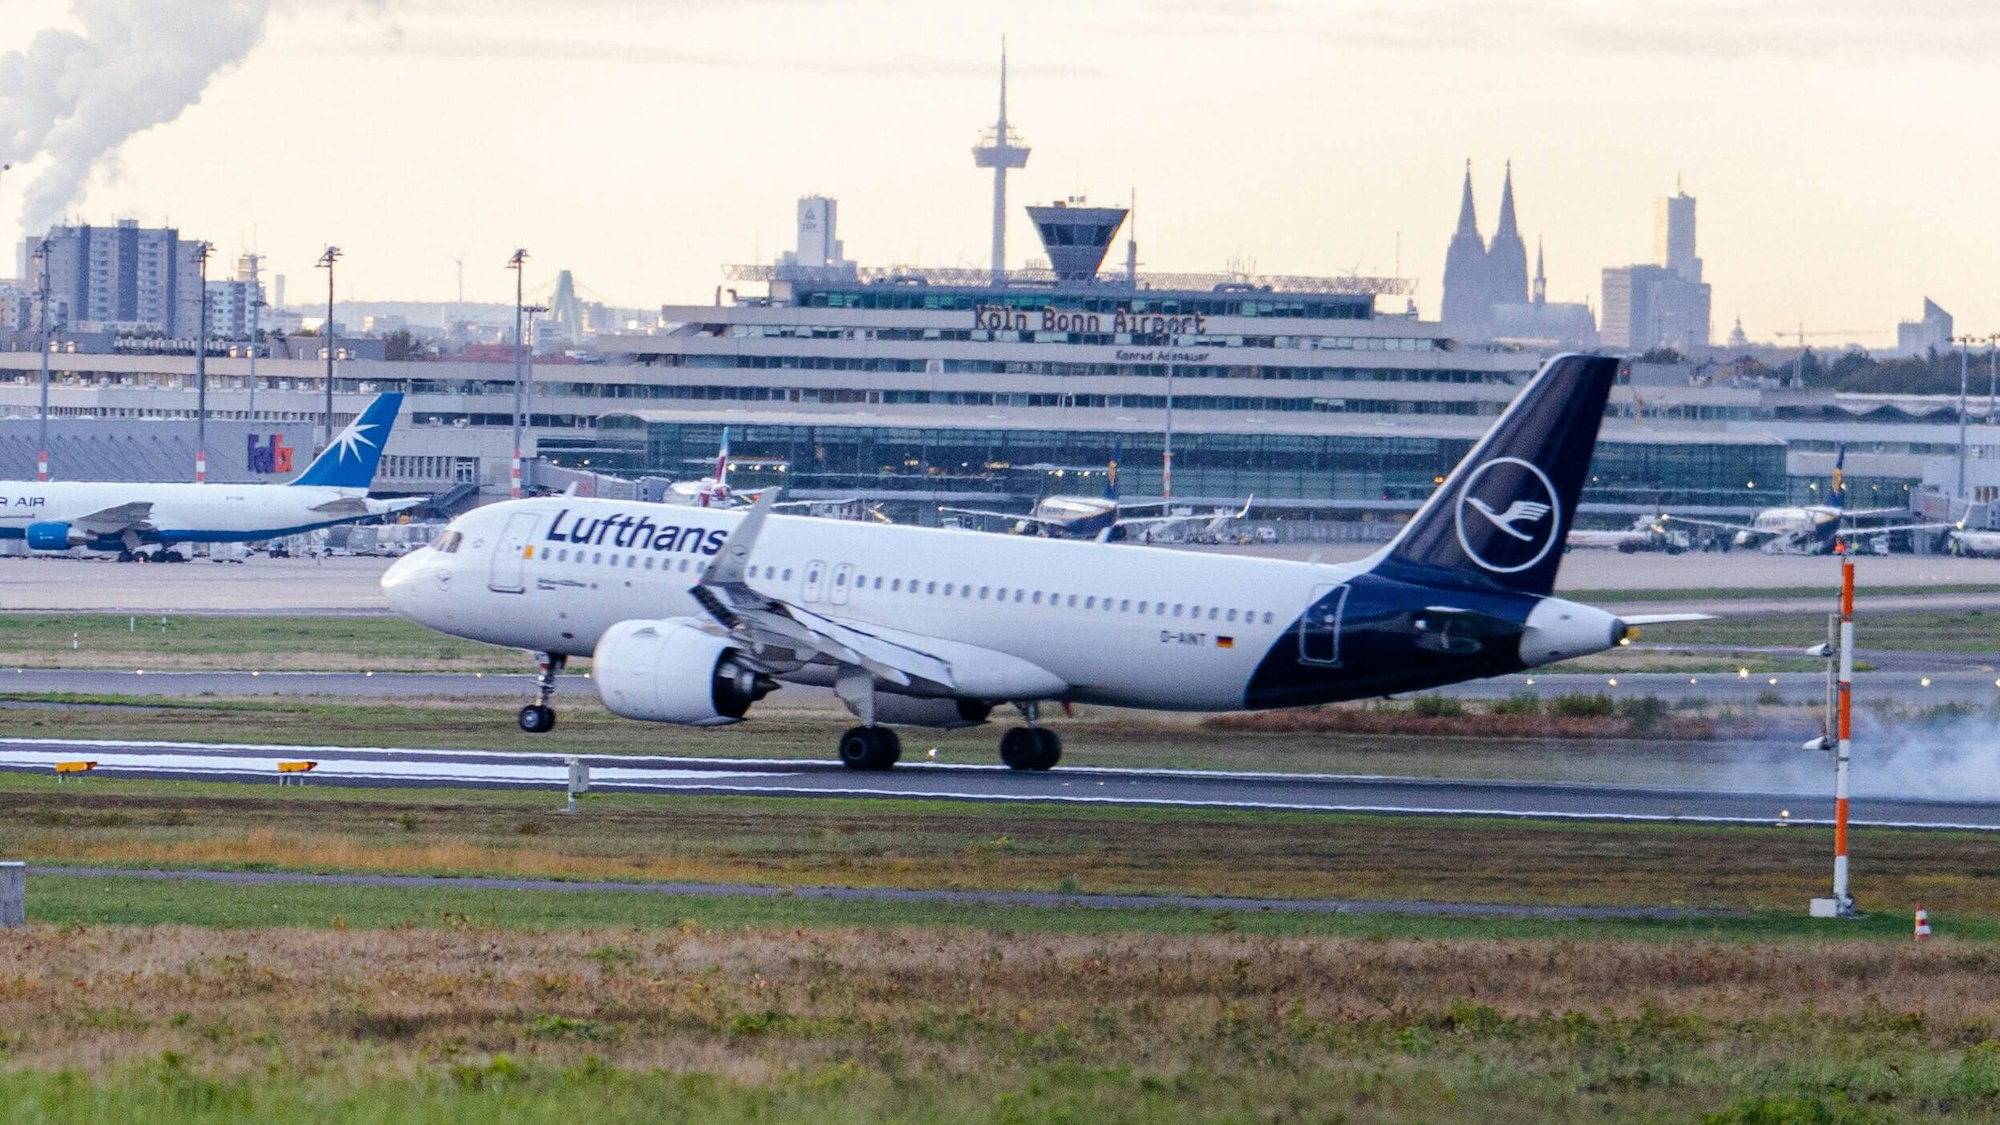 Flugverkehr am Flughafen Köln/Bonn